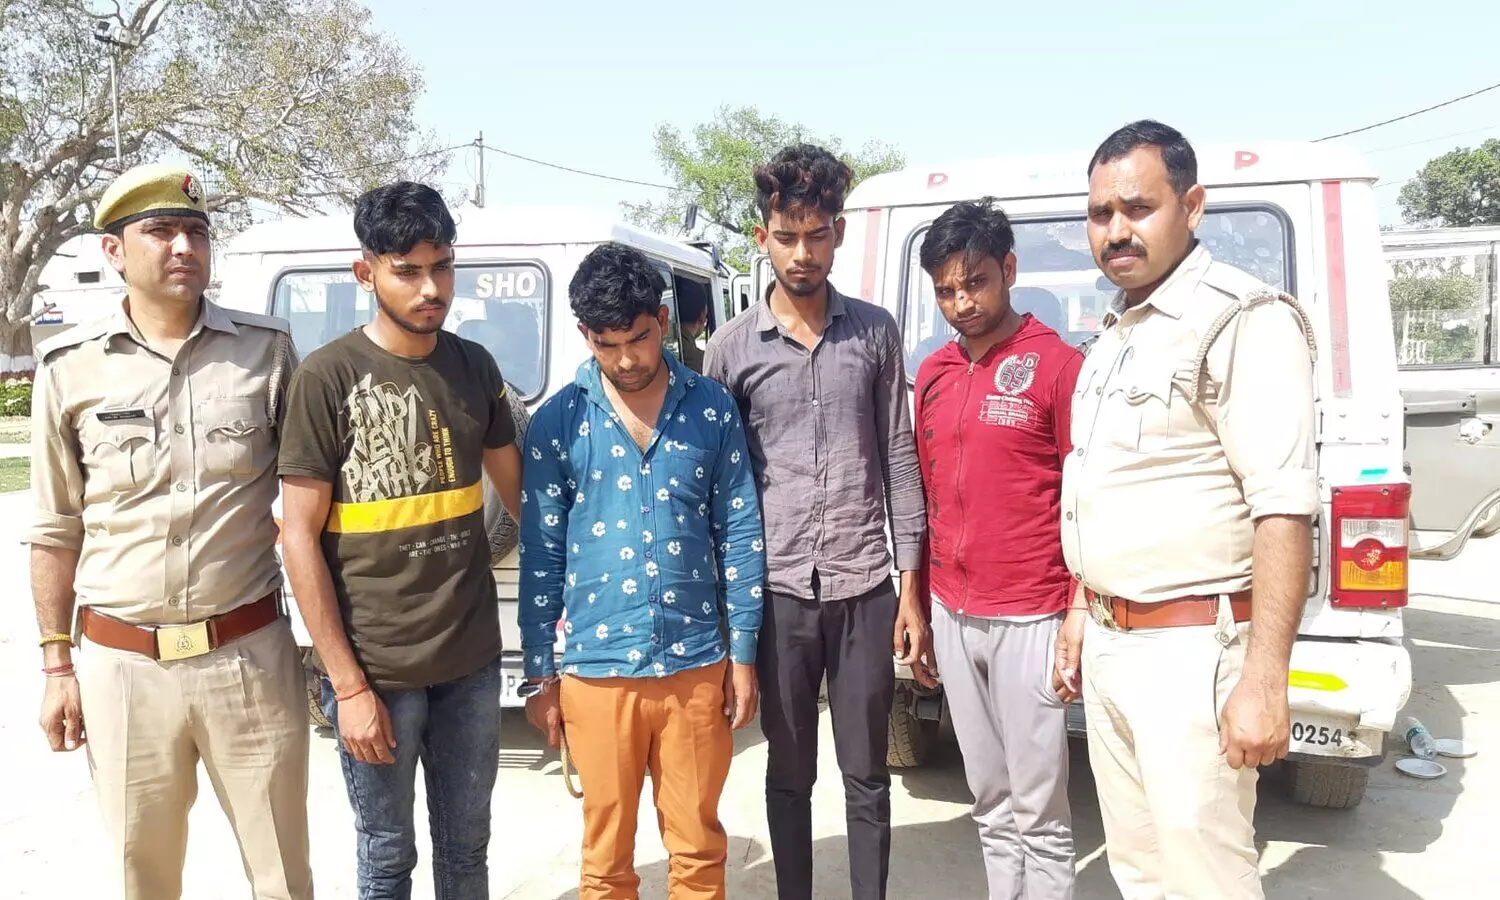 Bulandshahr News: लुटेरों के साथ पुलिस की मुठभेड़, होमगार्ड के पुत्र समेत 4 बदमाश गिरफ्तार